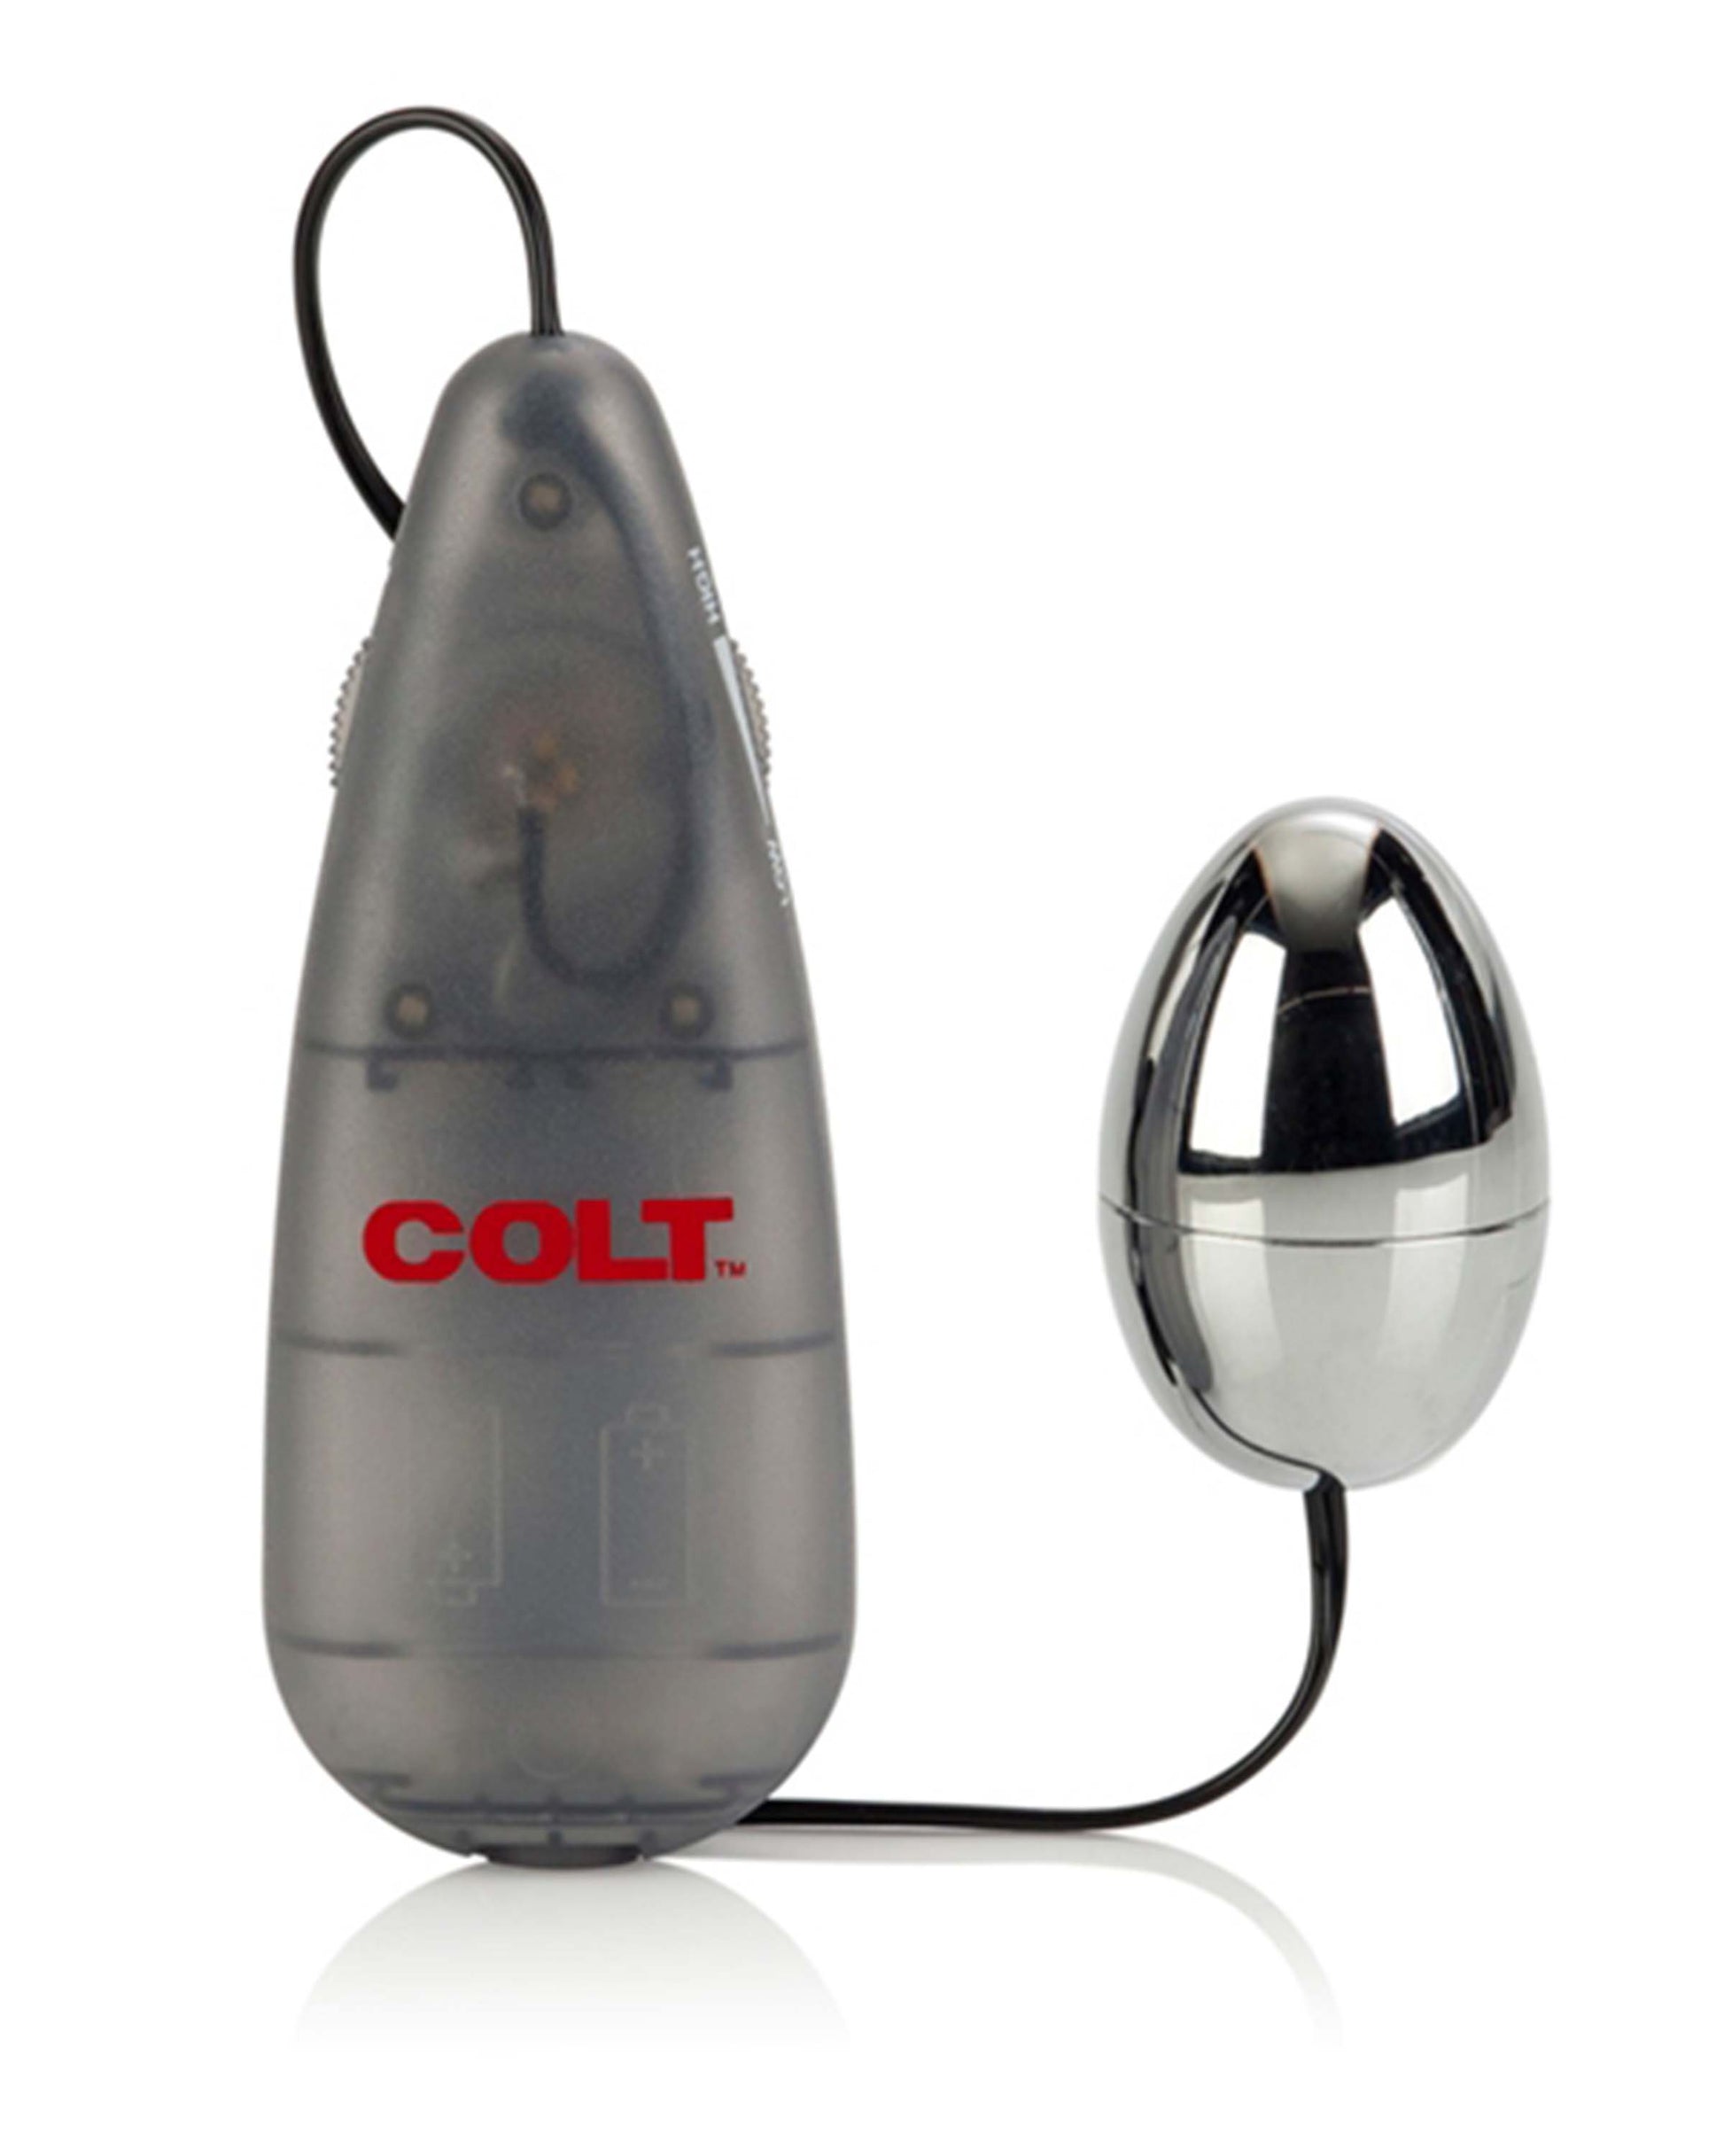 Colt Multi-Speed Power Pak Egg SE6890202